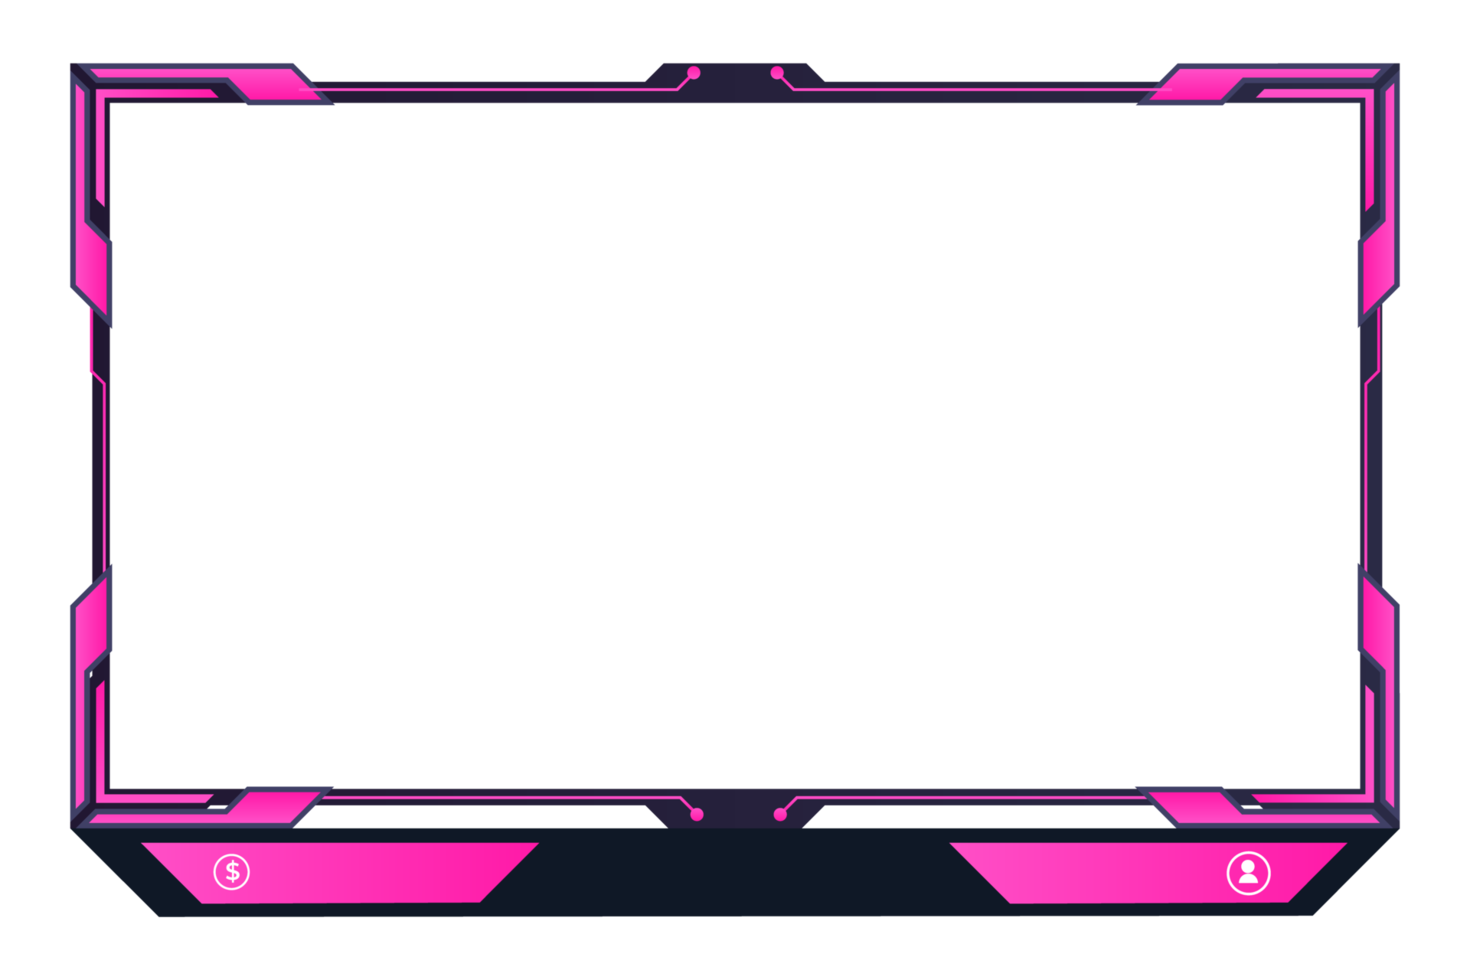 decoración de interfaz de pantalla de transmisión moderna para jugadoras. imagen superpuesta de juego futurista con formas y botones abstractos. borde de pantalla de juego en vivo png con formas de color rosa.